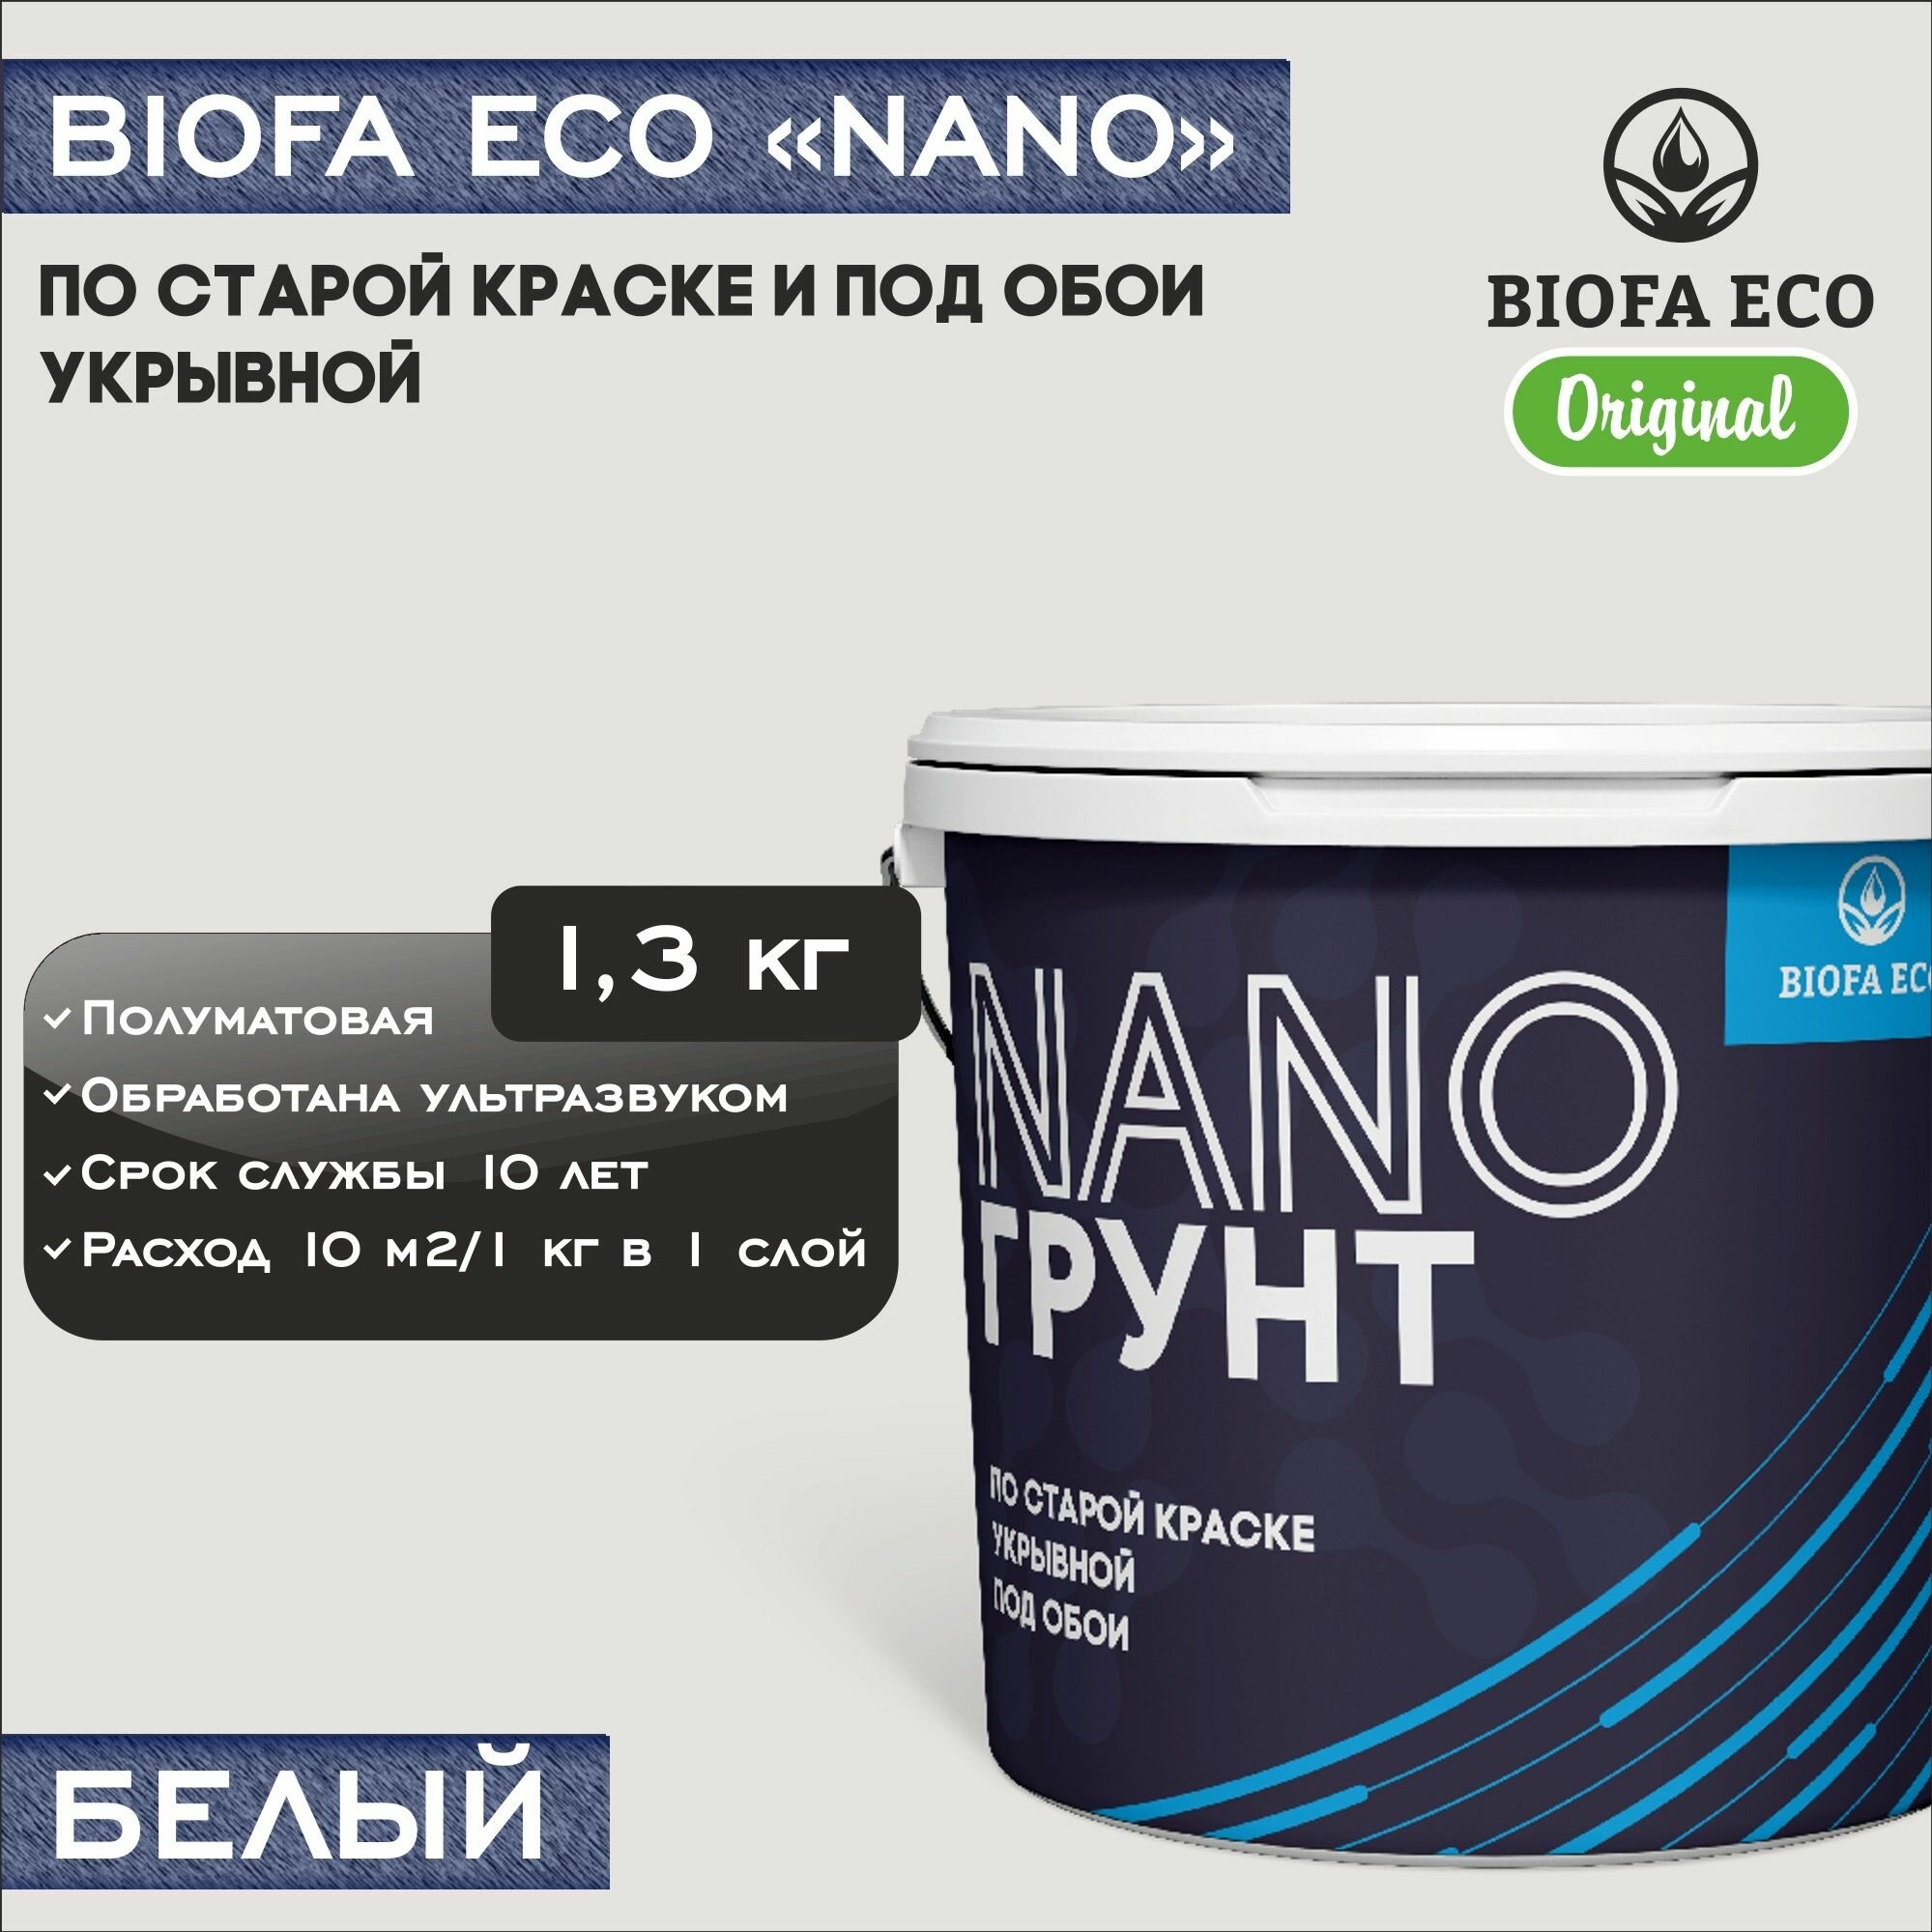 Грунт BIOFA ECO NANO укрывной под обои и по старой краске, адгезионный, цвет белый, 1,3 кг